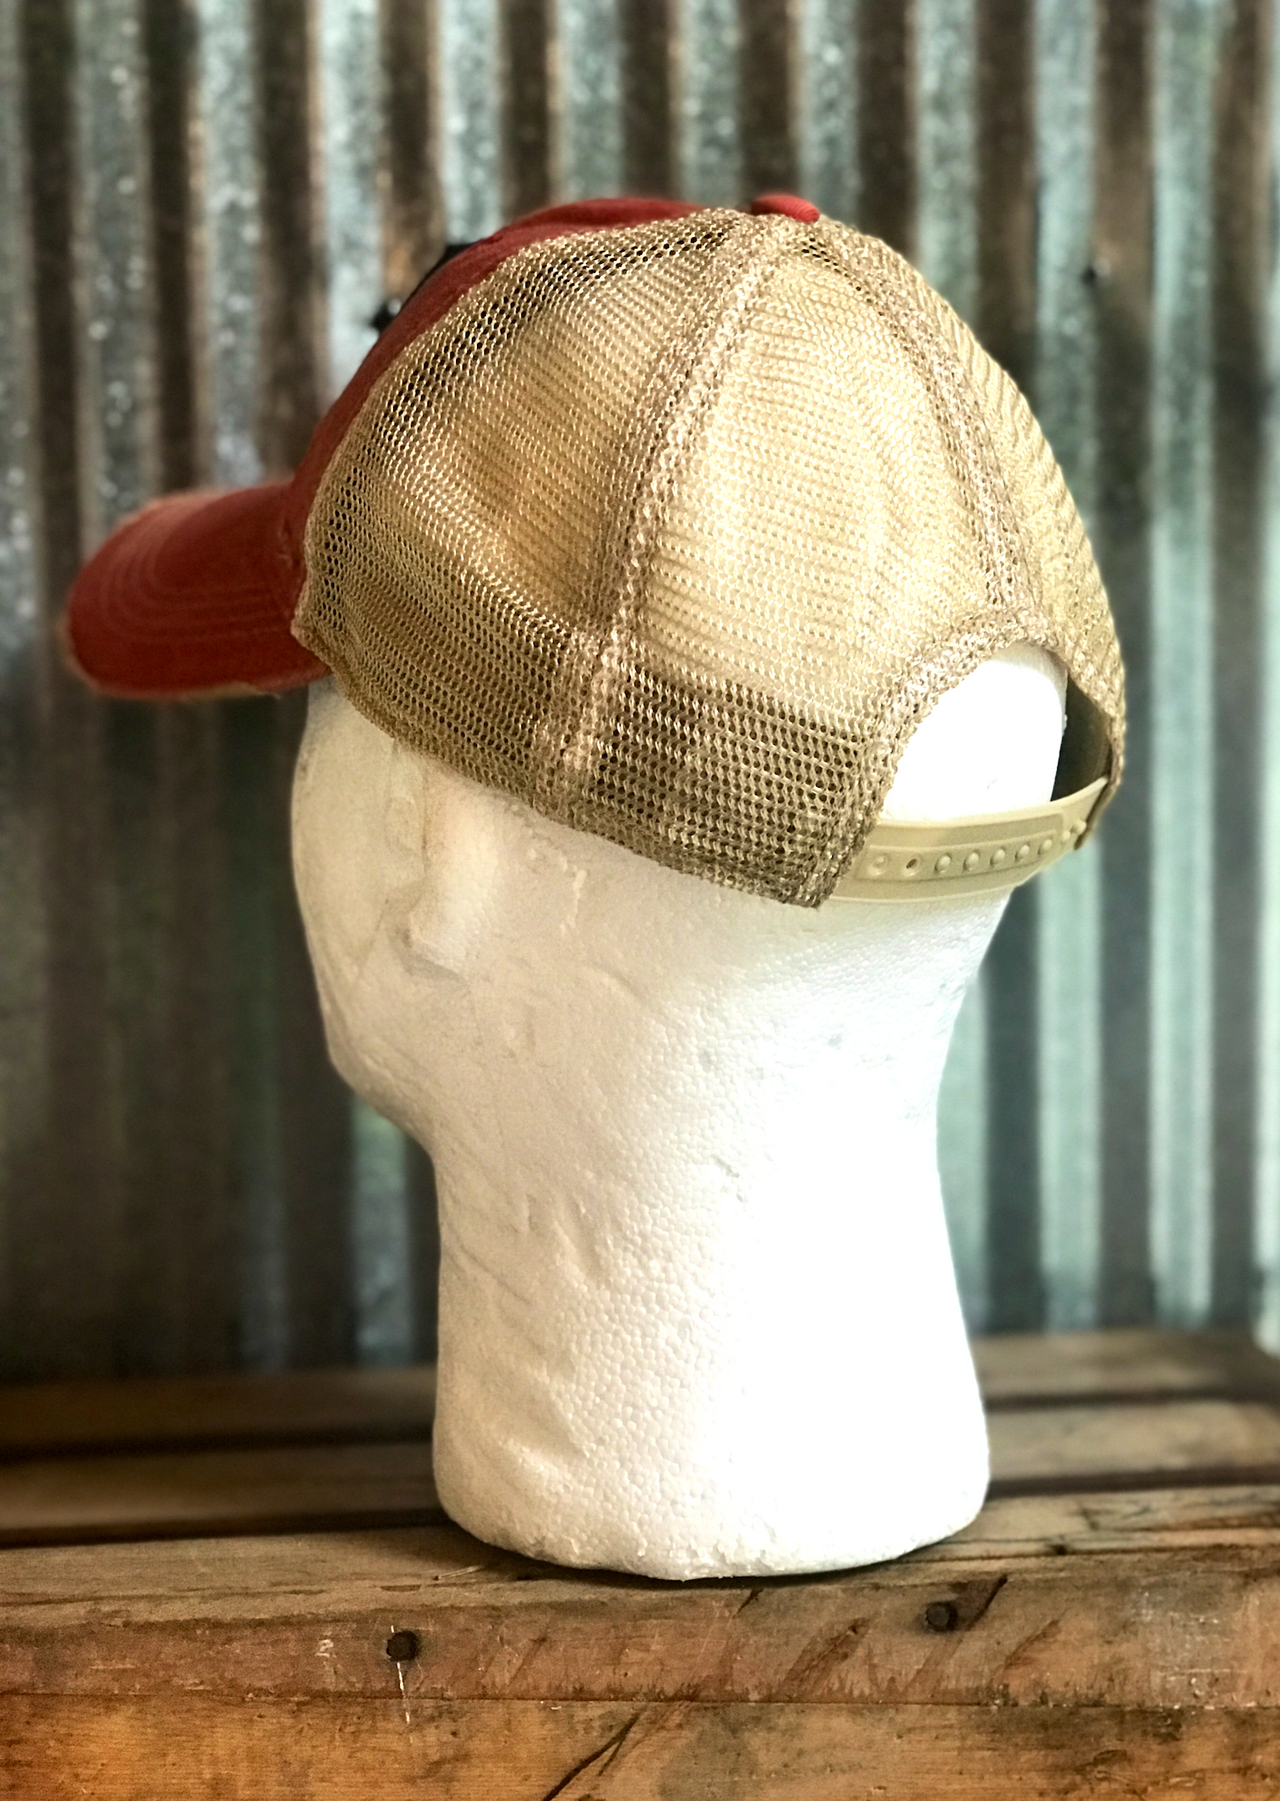 Retro Brand Heileman's Old Style Trucker Hat